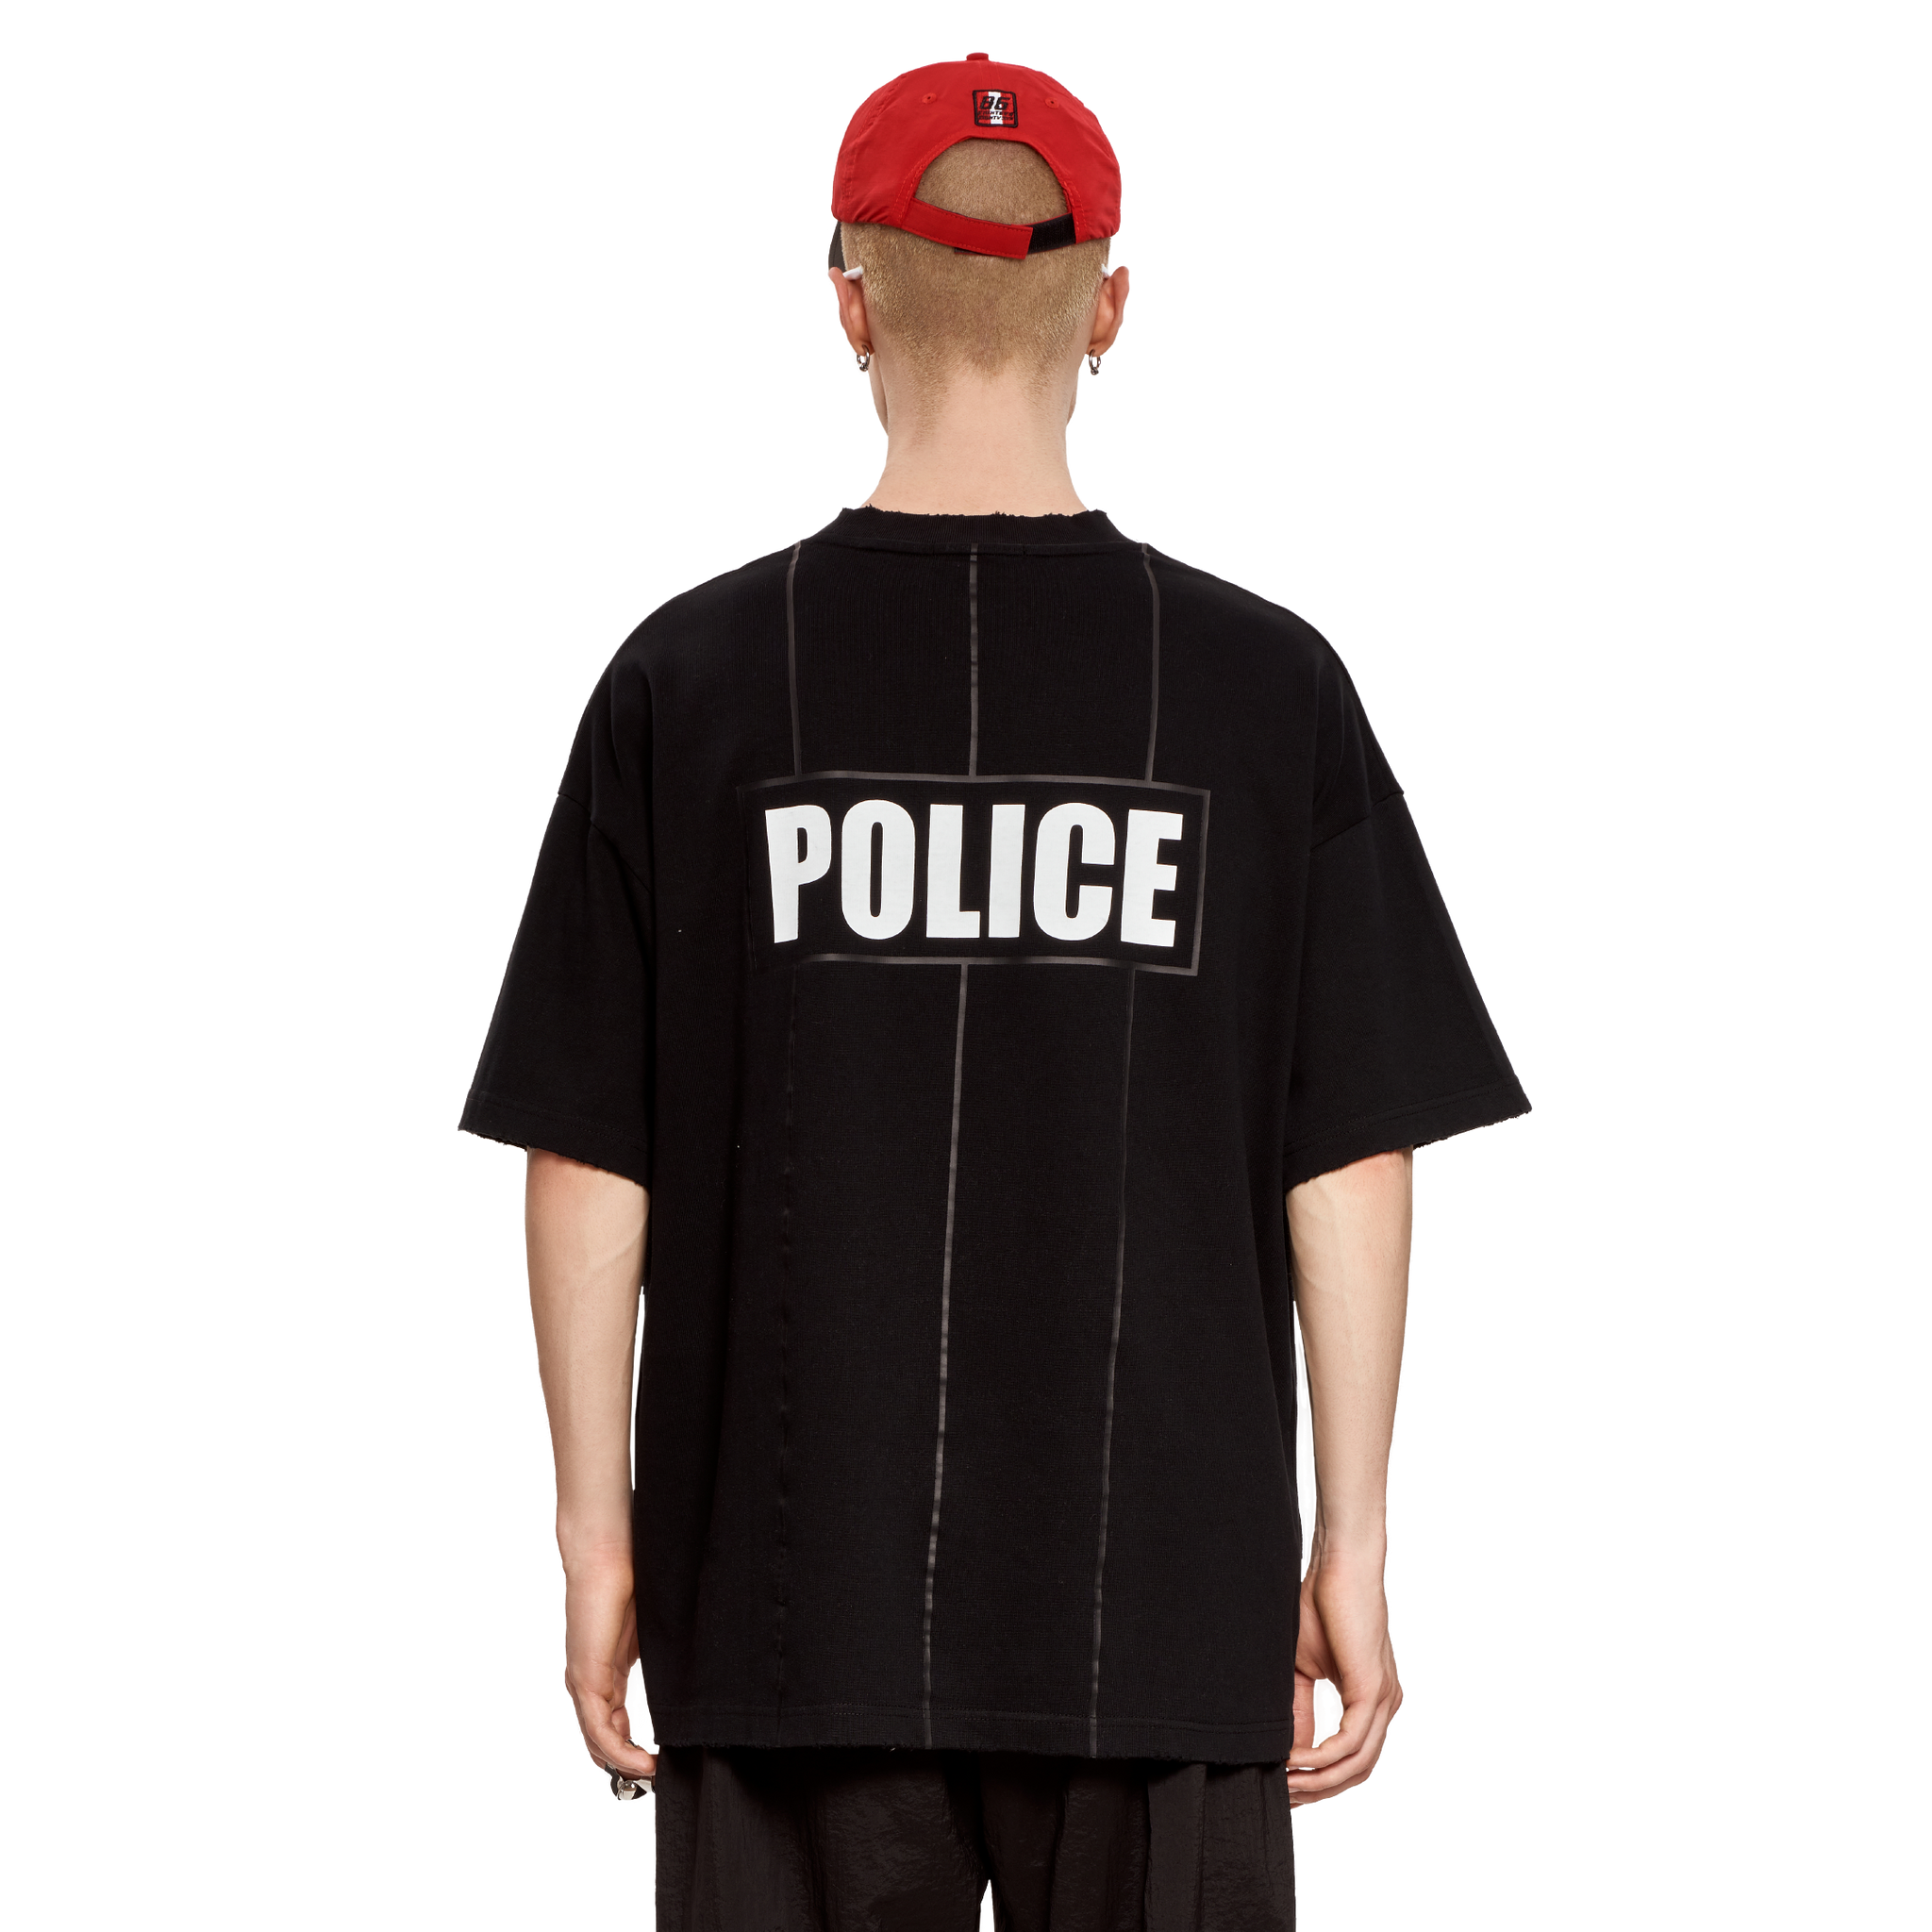 POLICE OFFICER تيشيرت - أسود